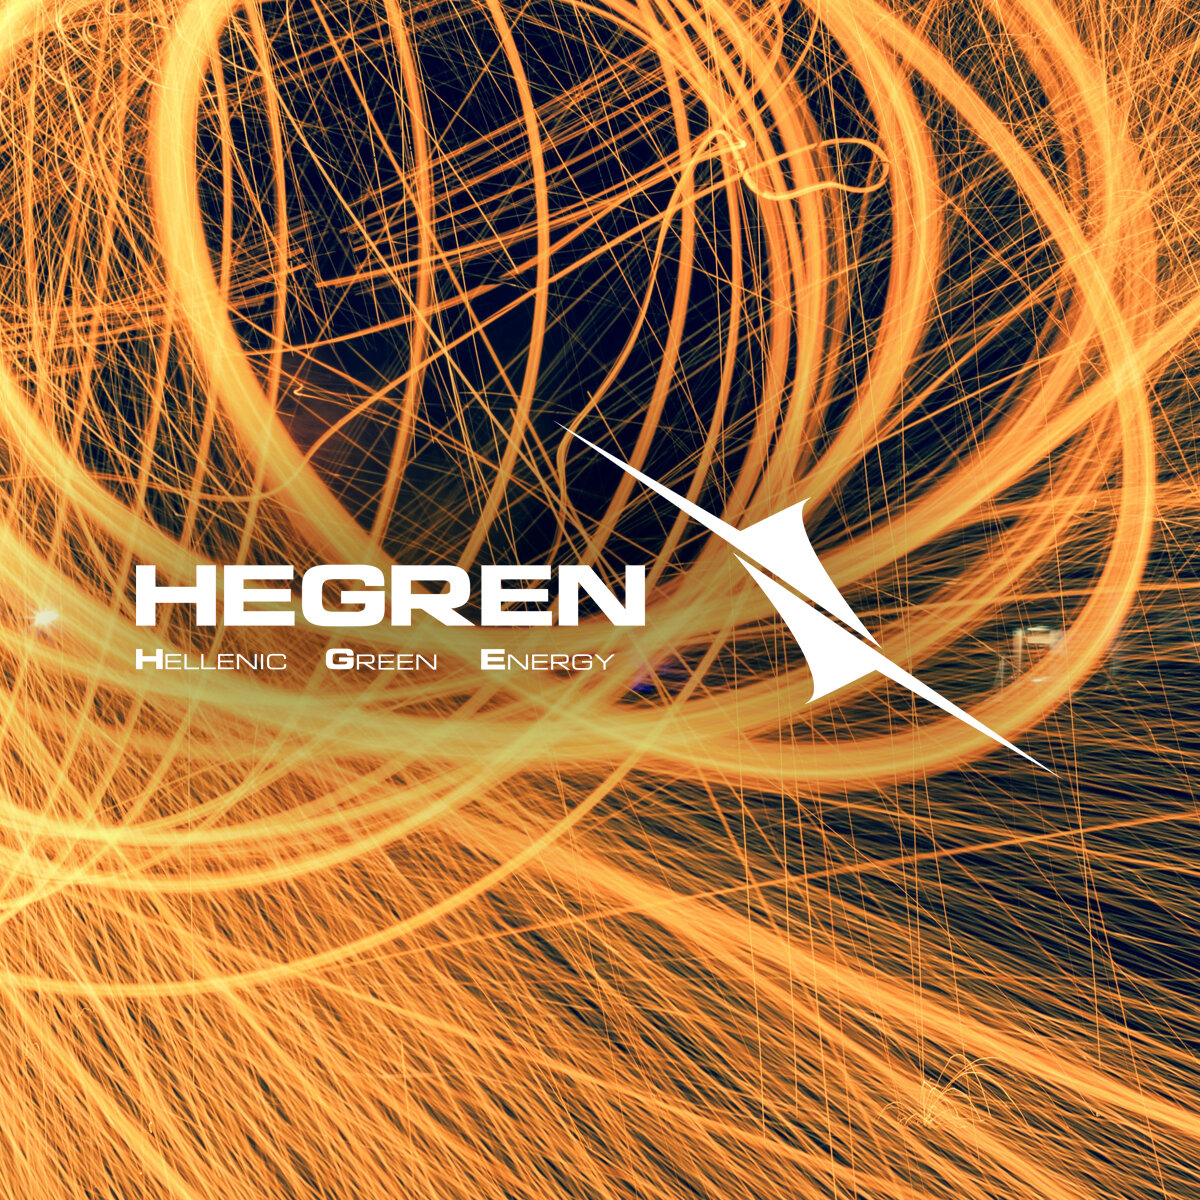 hegren-light-image_logo-1200x1200.jpg